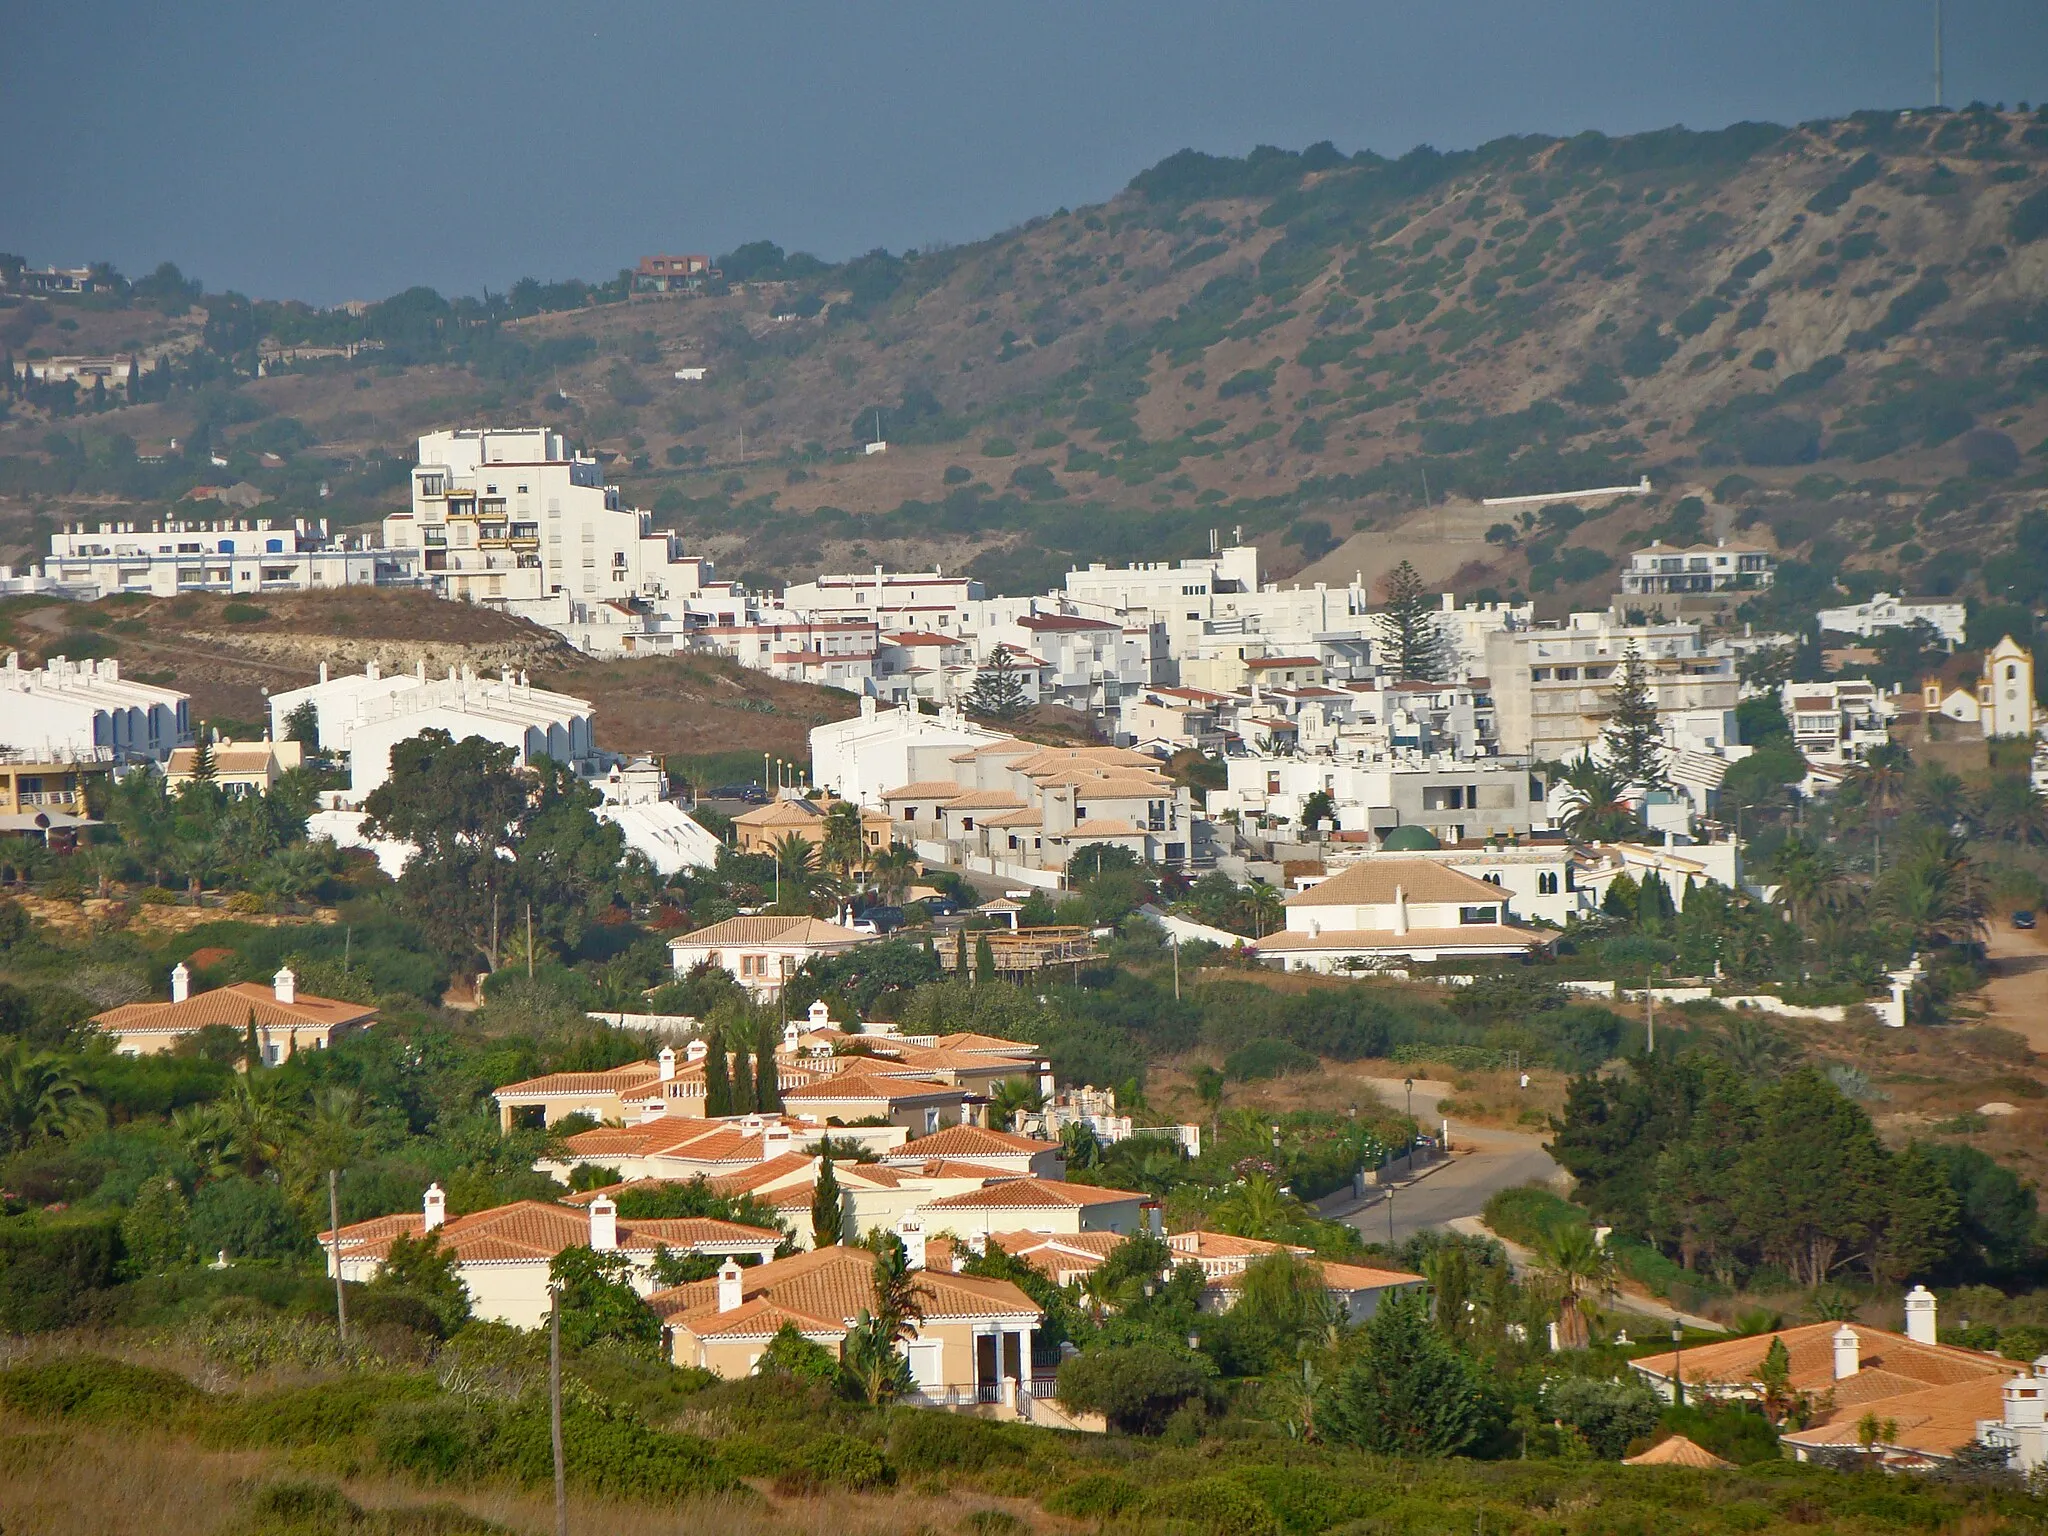 Image of Algarve